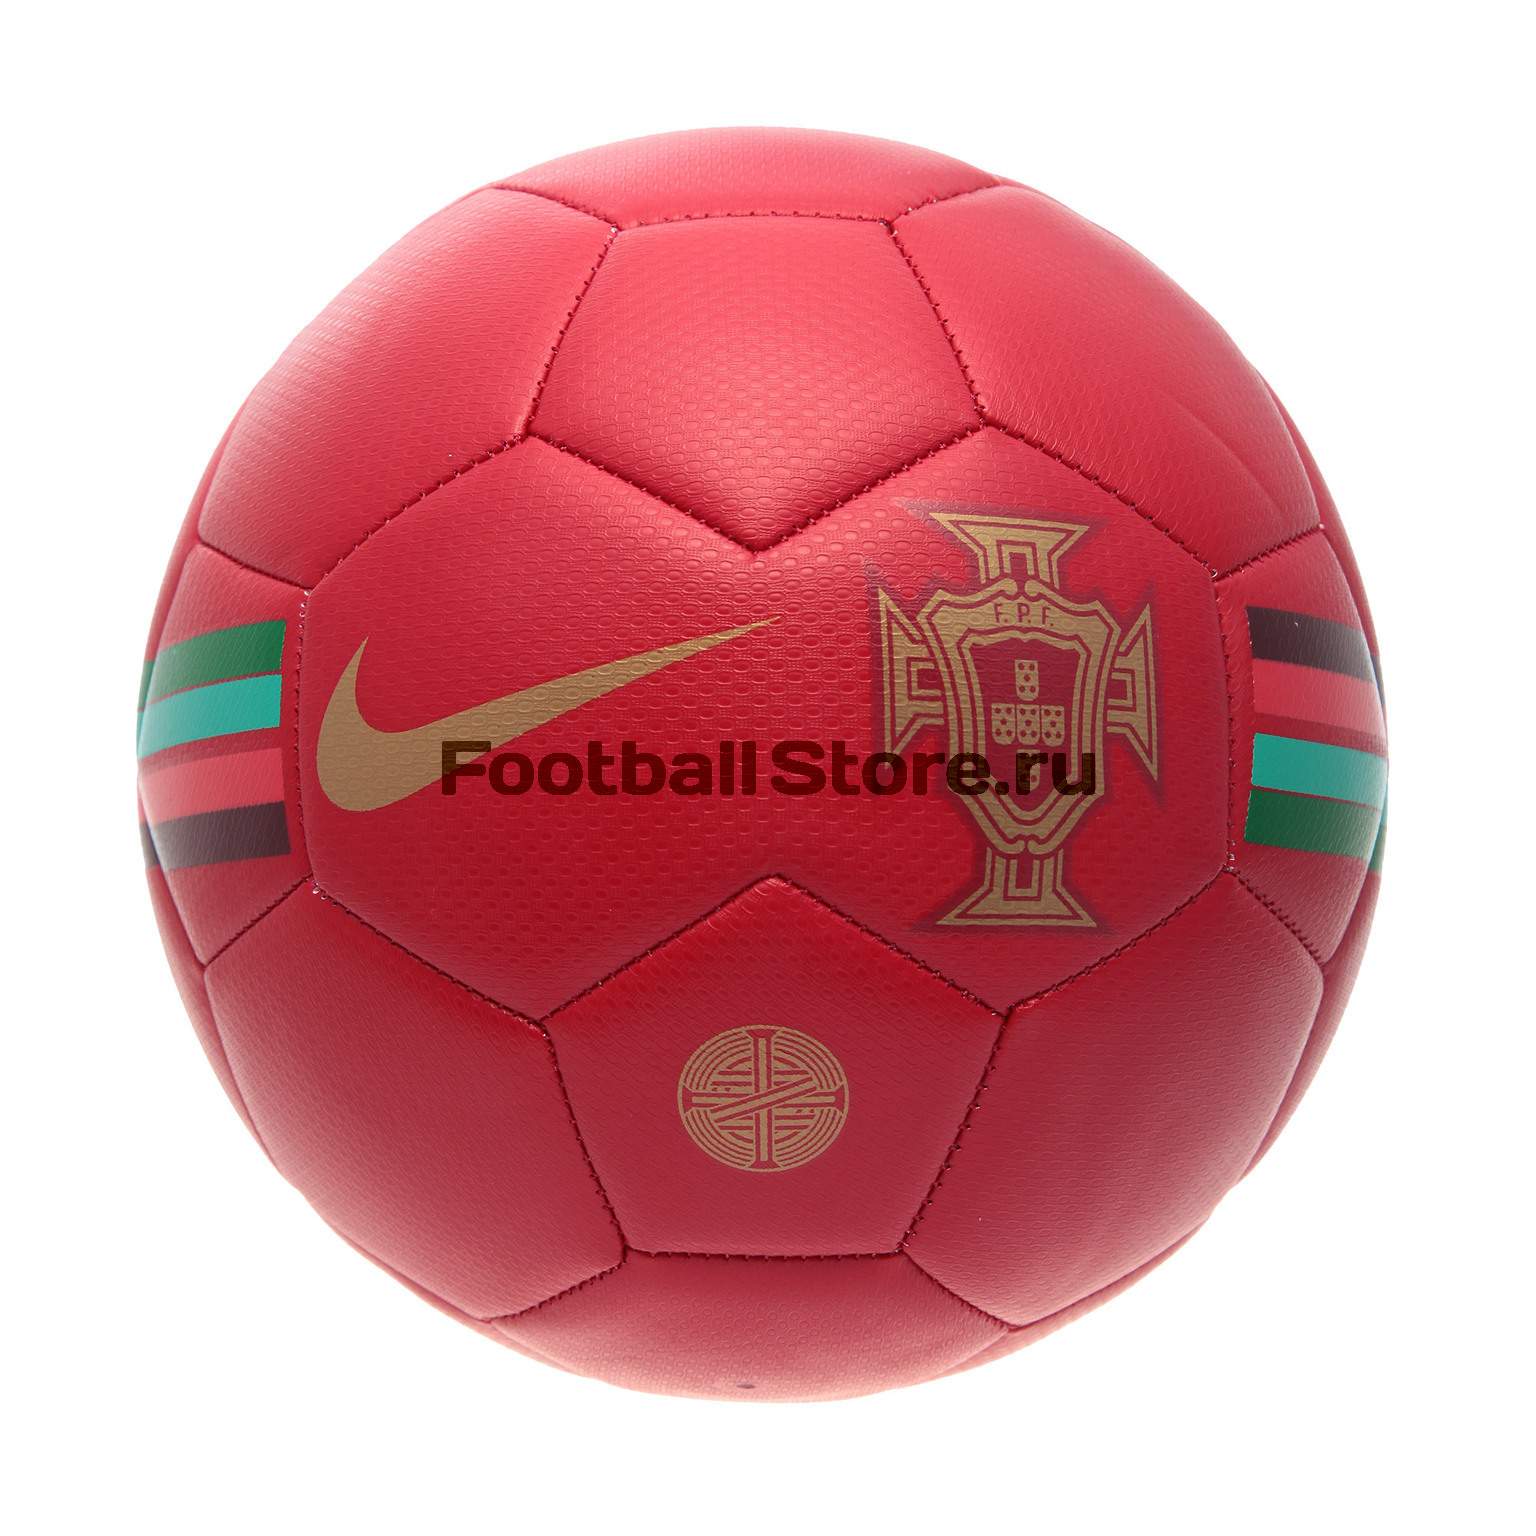 Футбольный мяч Nike сборной Португалии (Portugal) SC3230-687